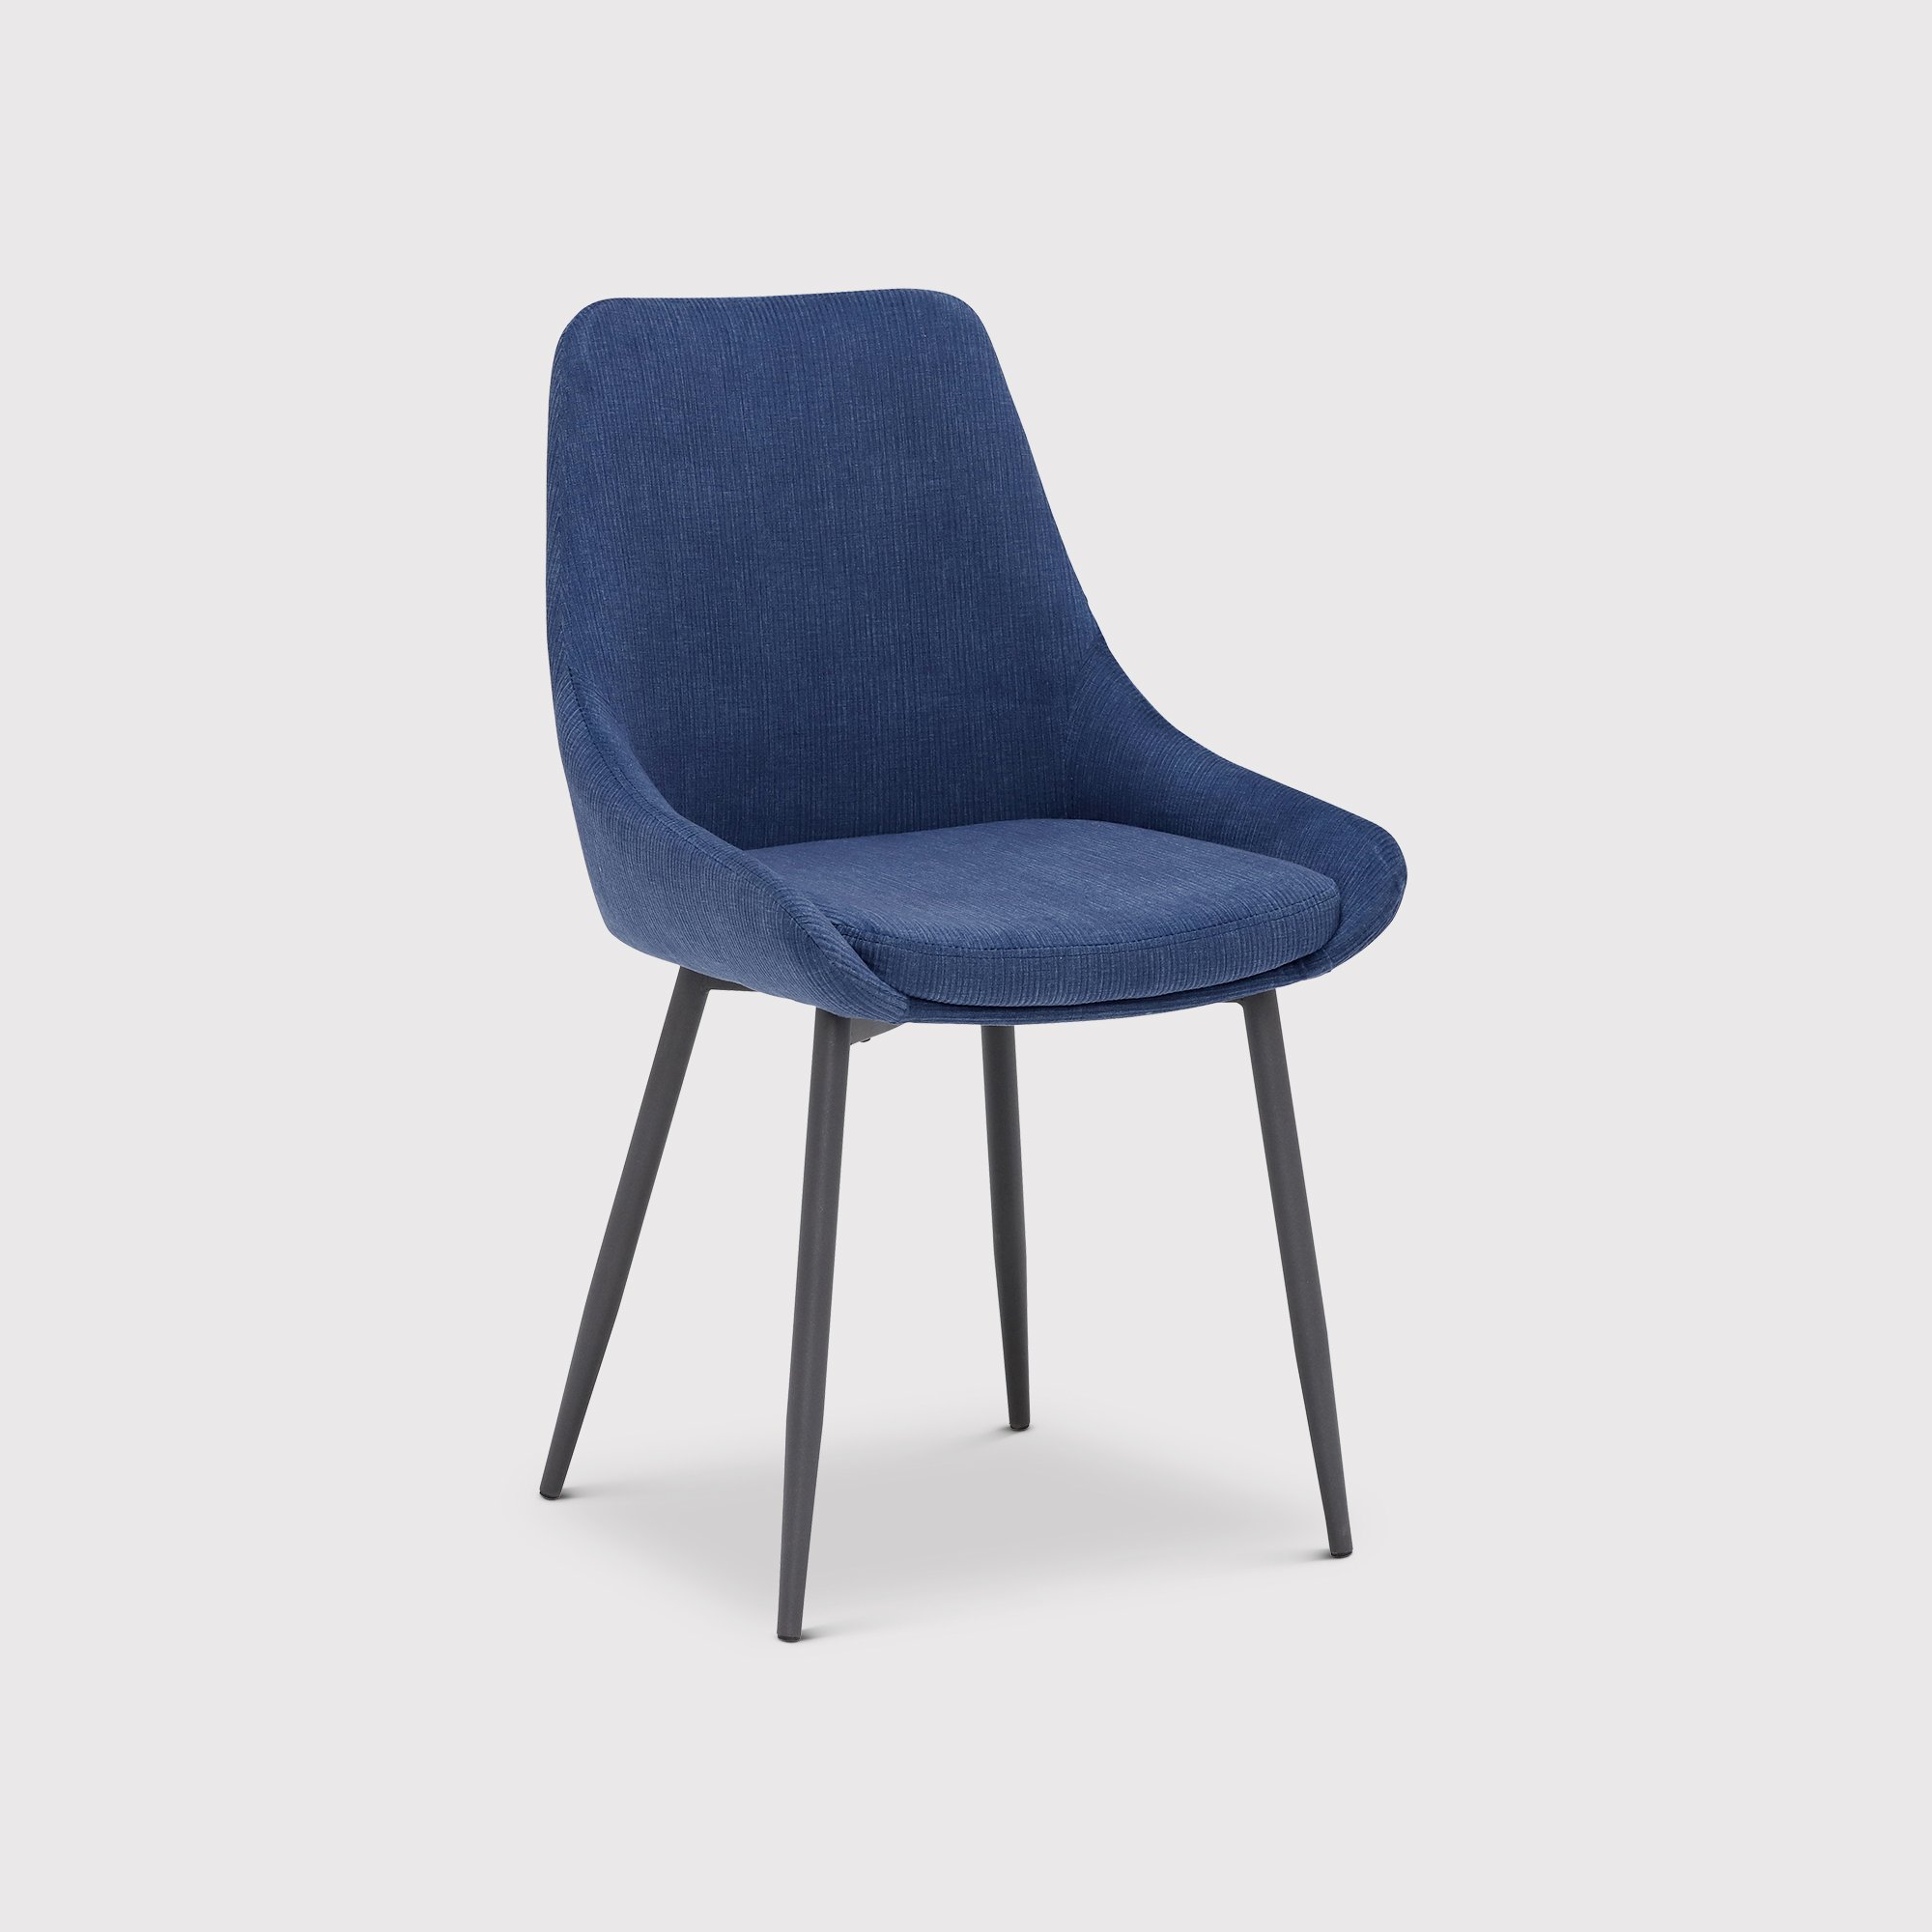 Emmett Dining Chair, Blue Fabric | Barker & Stonehouse